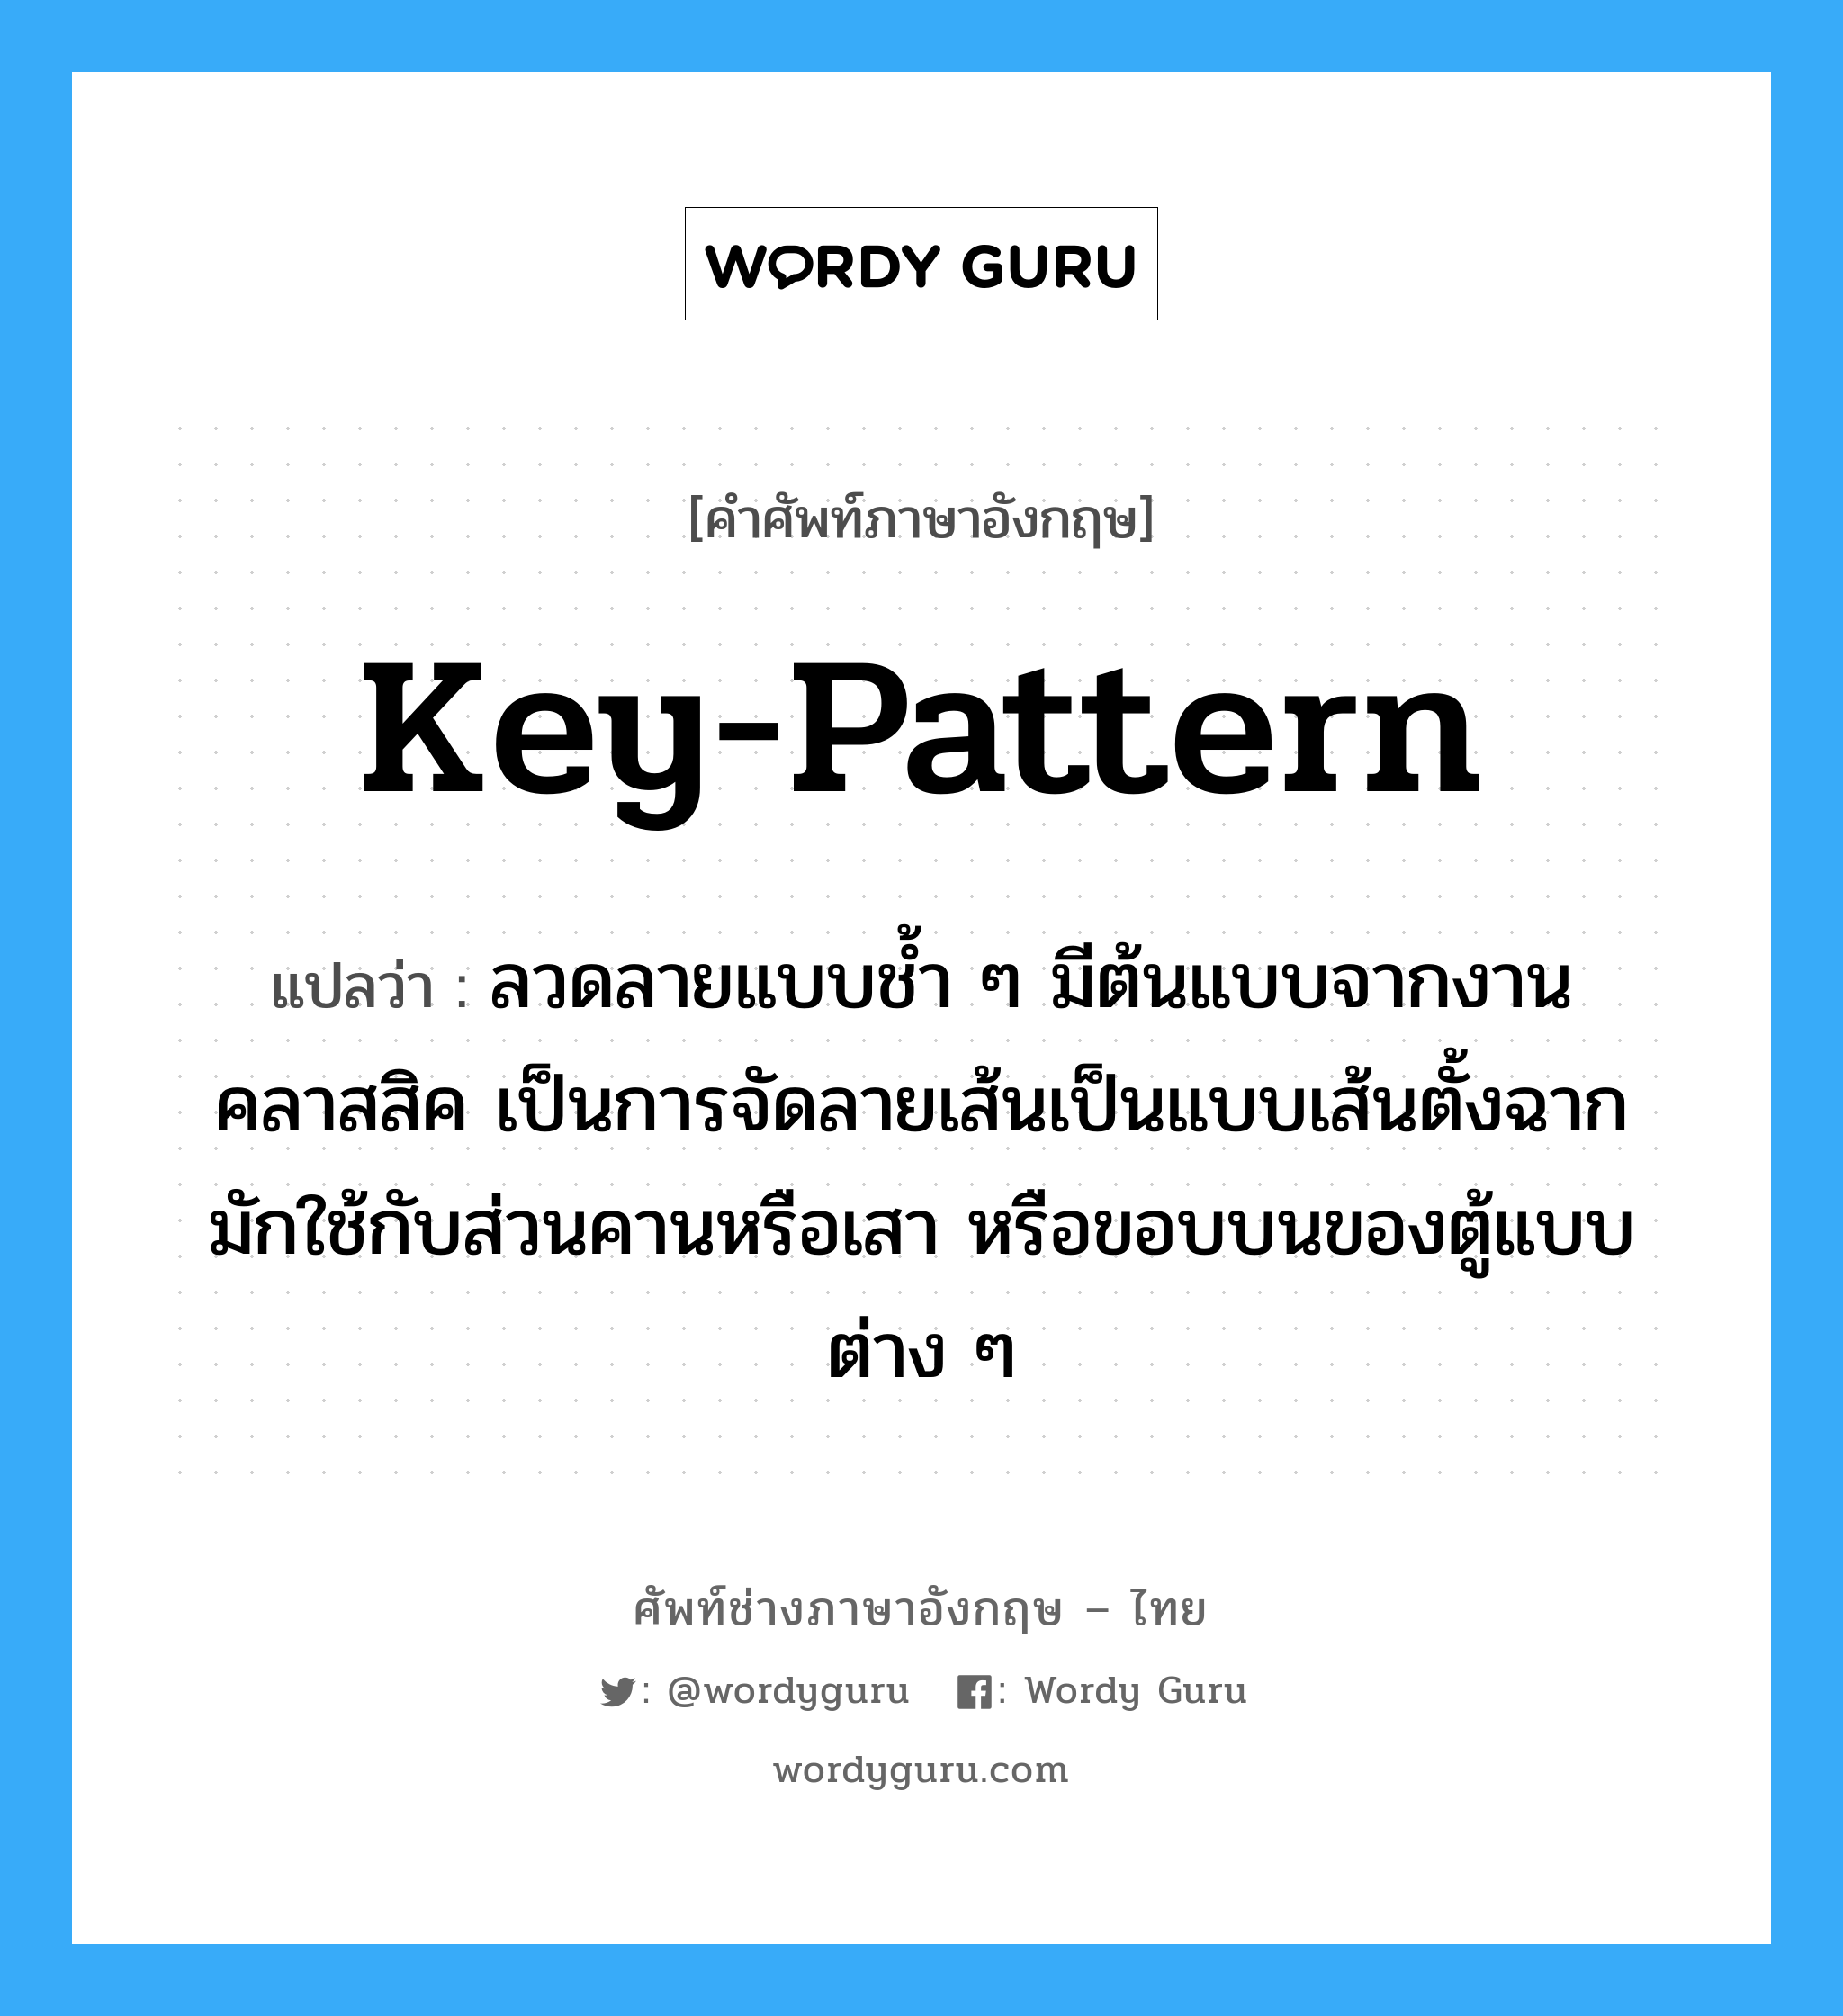 key-pattern แปลว่า?, คำศัพท์ช่างภาษาอังกฤษ - ไทย key-pattern คำศัพท์ภาษาอังกฤษ key-pattern แปลว่า ลวดลายแบบช้ำ ๆ มีต้นแบบจากงานคลาสสิค เป็นการจัดลายเส้นเป็นแบบเส้นตั้งฉาก มักใช้กับส่วนคานหรือเสา หรือขอบบนของตู้แบบต่าง ๆ